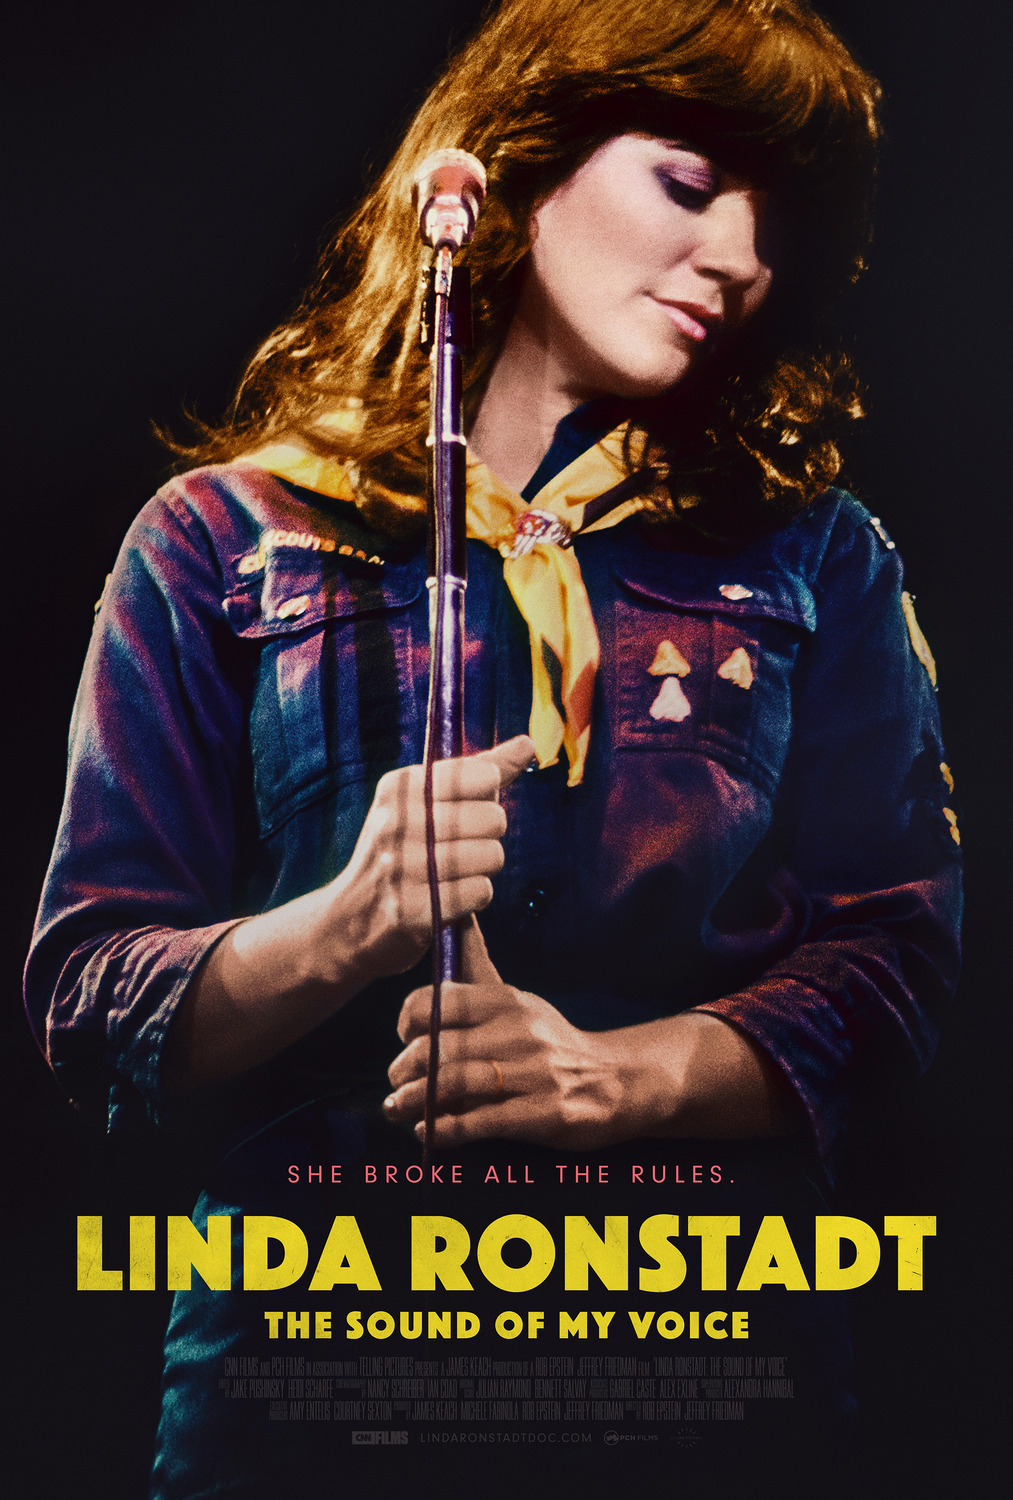 Постер фильма "Линда Ронстадт: Звук моего голоса". 